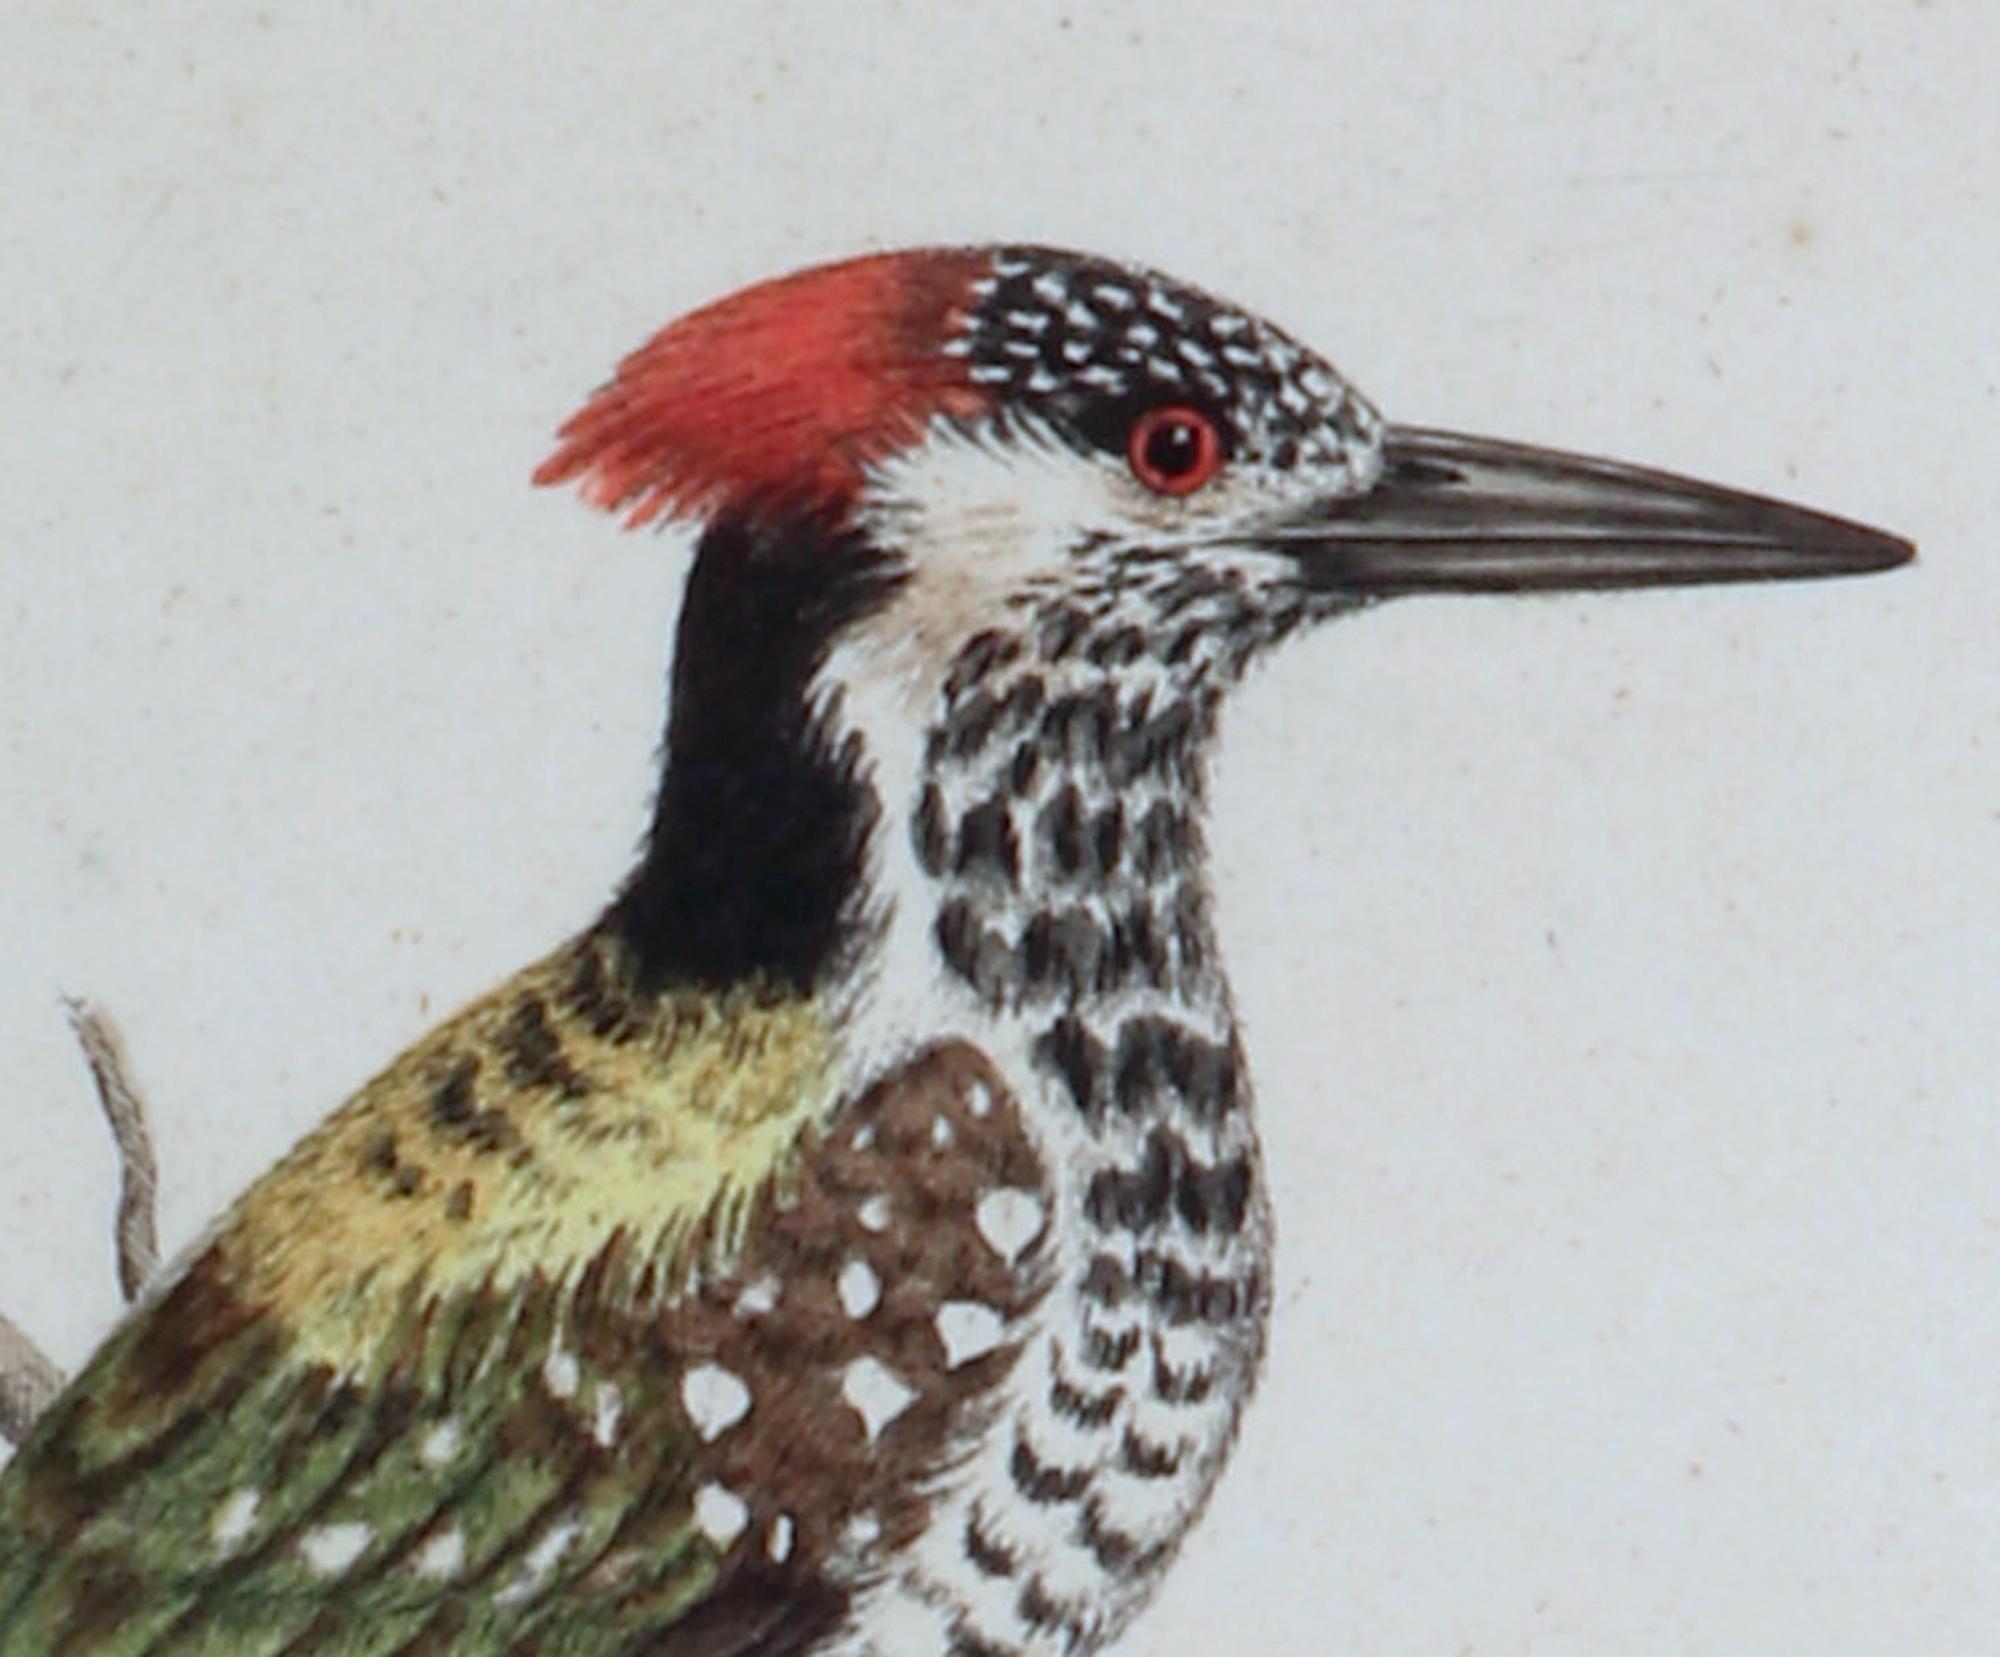 Gravures de George Edwards représentant un oiseau,
Pic, Picus Bengalensis,
#82,
1745

Une gravure à la main de George Edwards représentant un pic.

Dimensions : 16 3/4 pouces x 14 pouces de large x 1 pouce de profondeur.